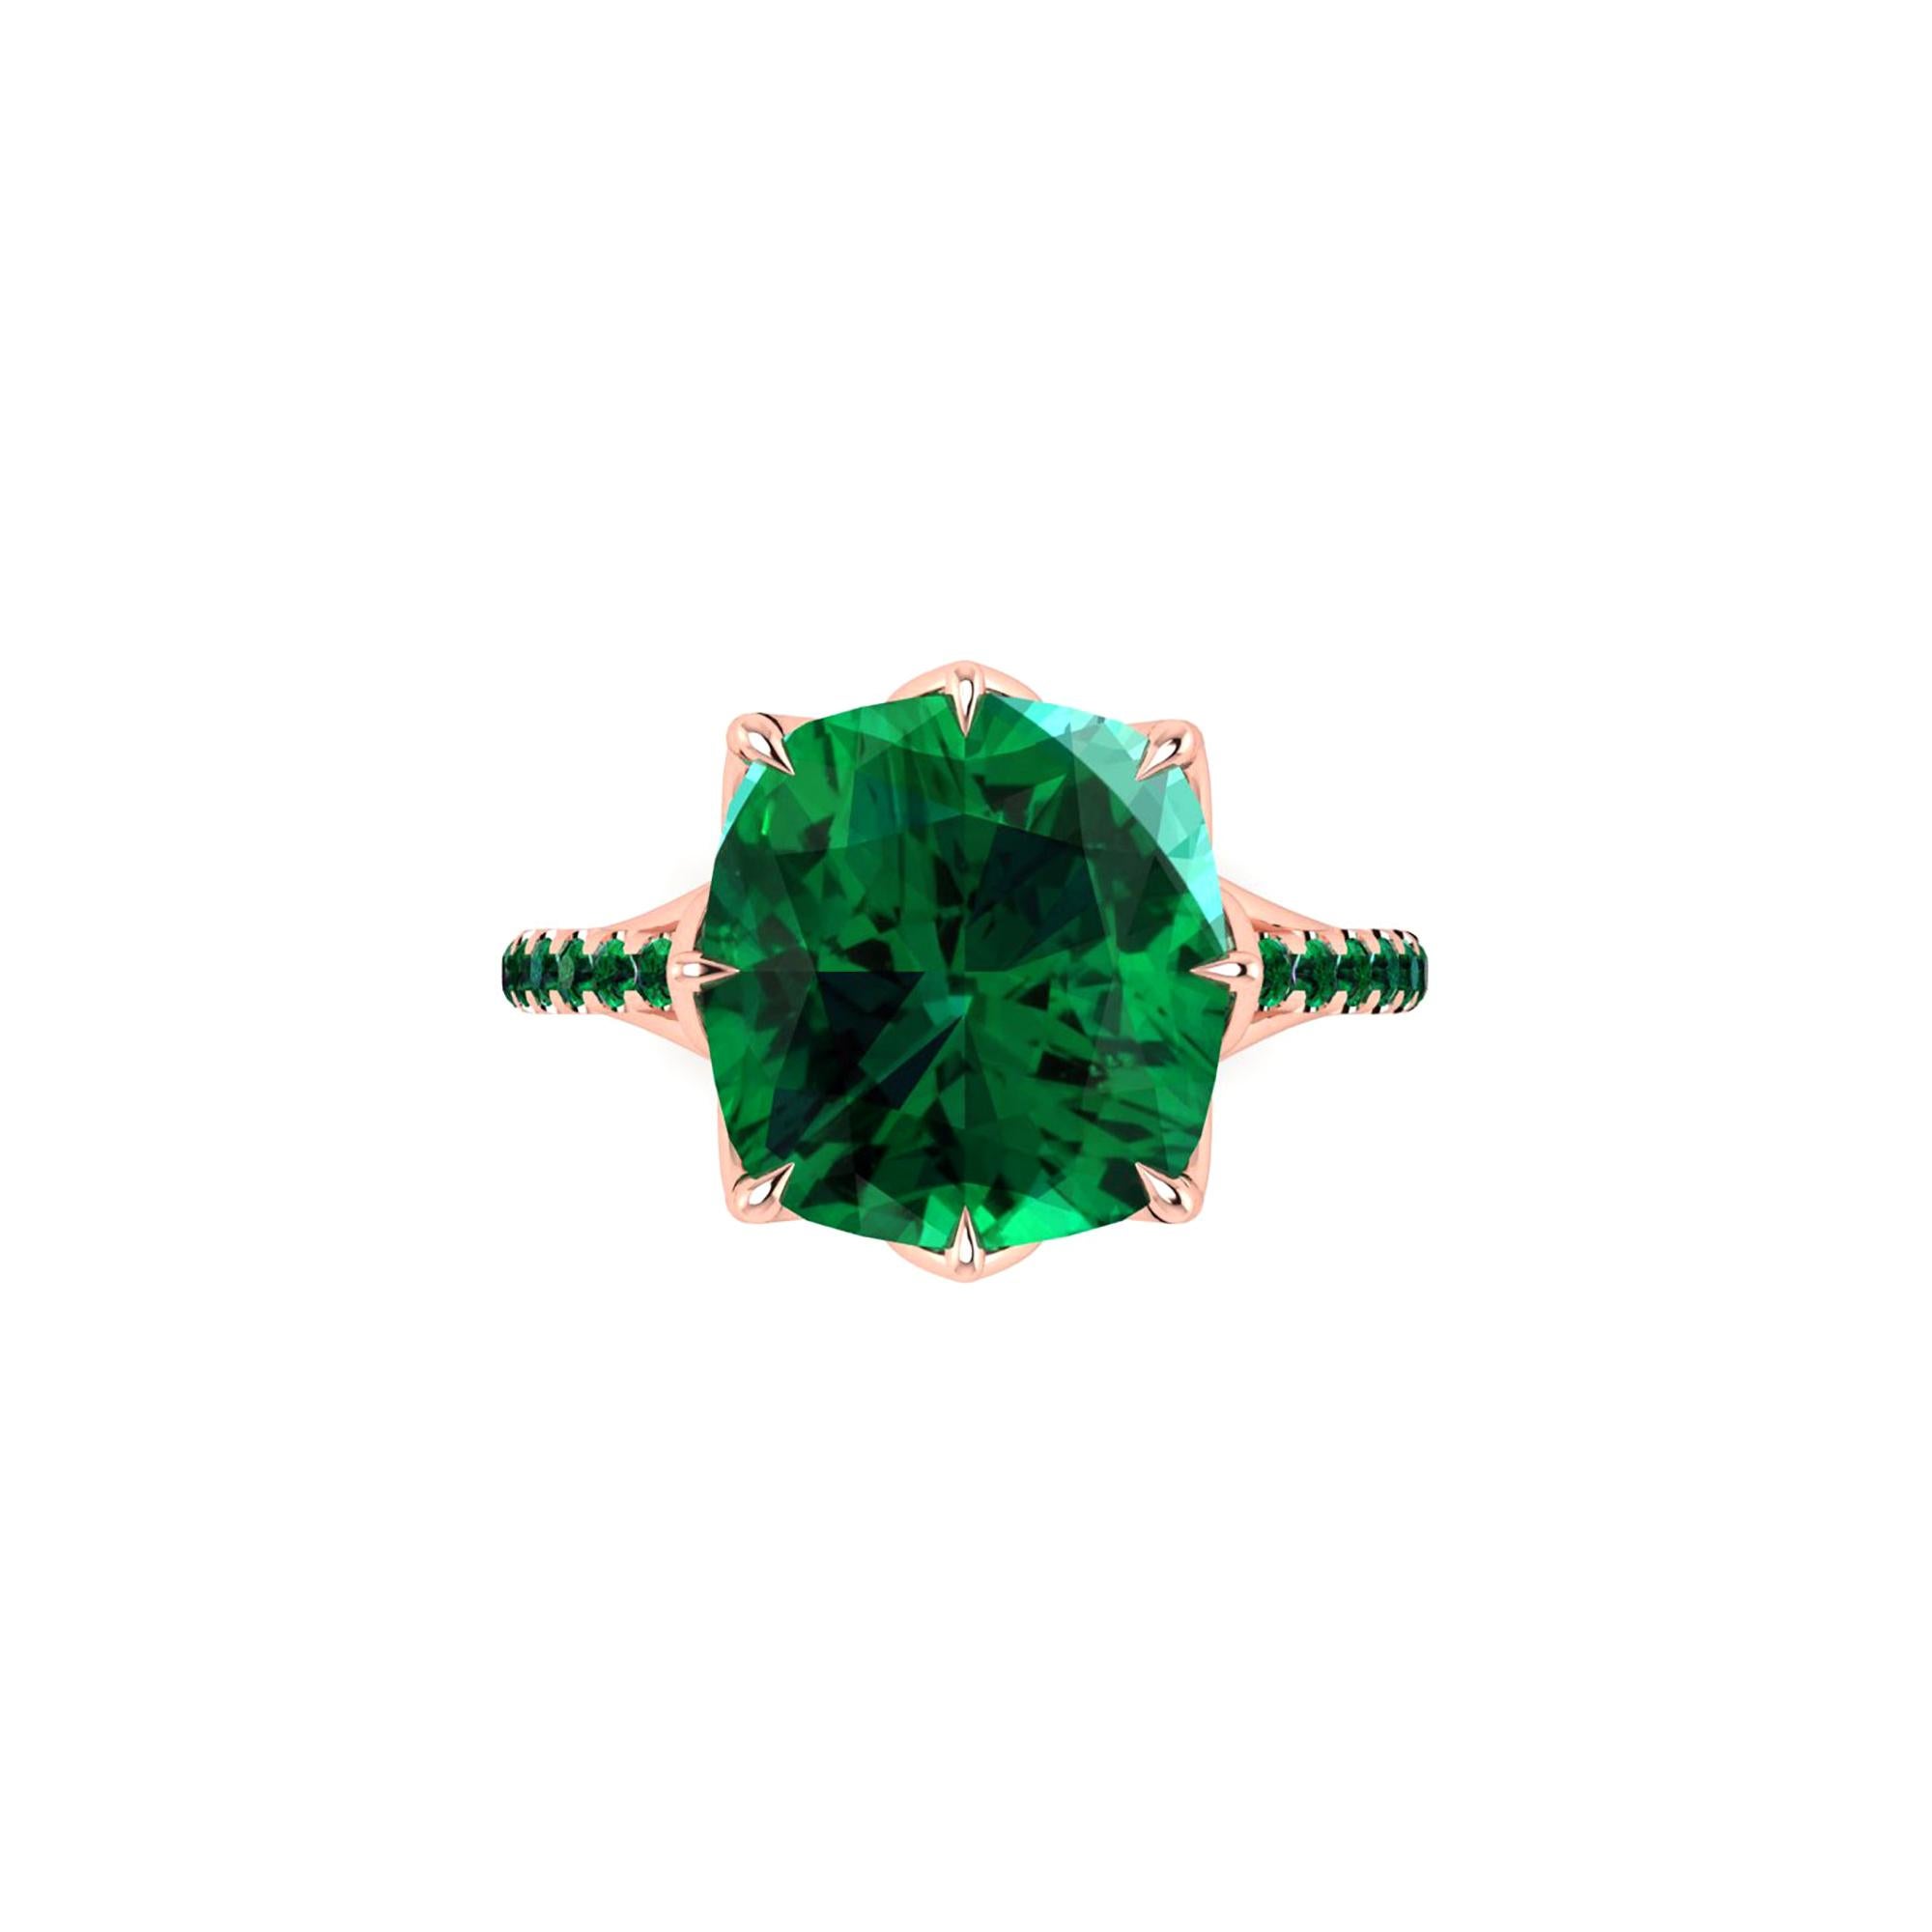 5 Carat Electric Green Tourmaline 18 Karat Rose Gold Ring